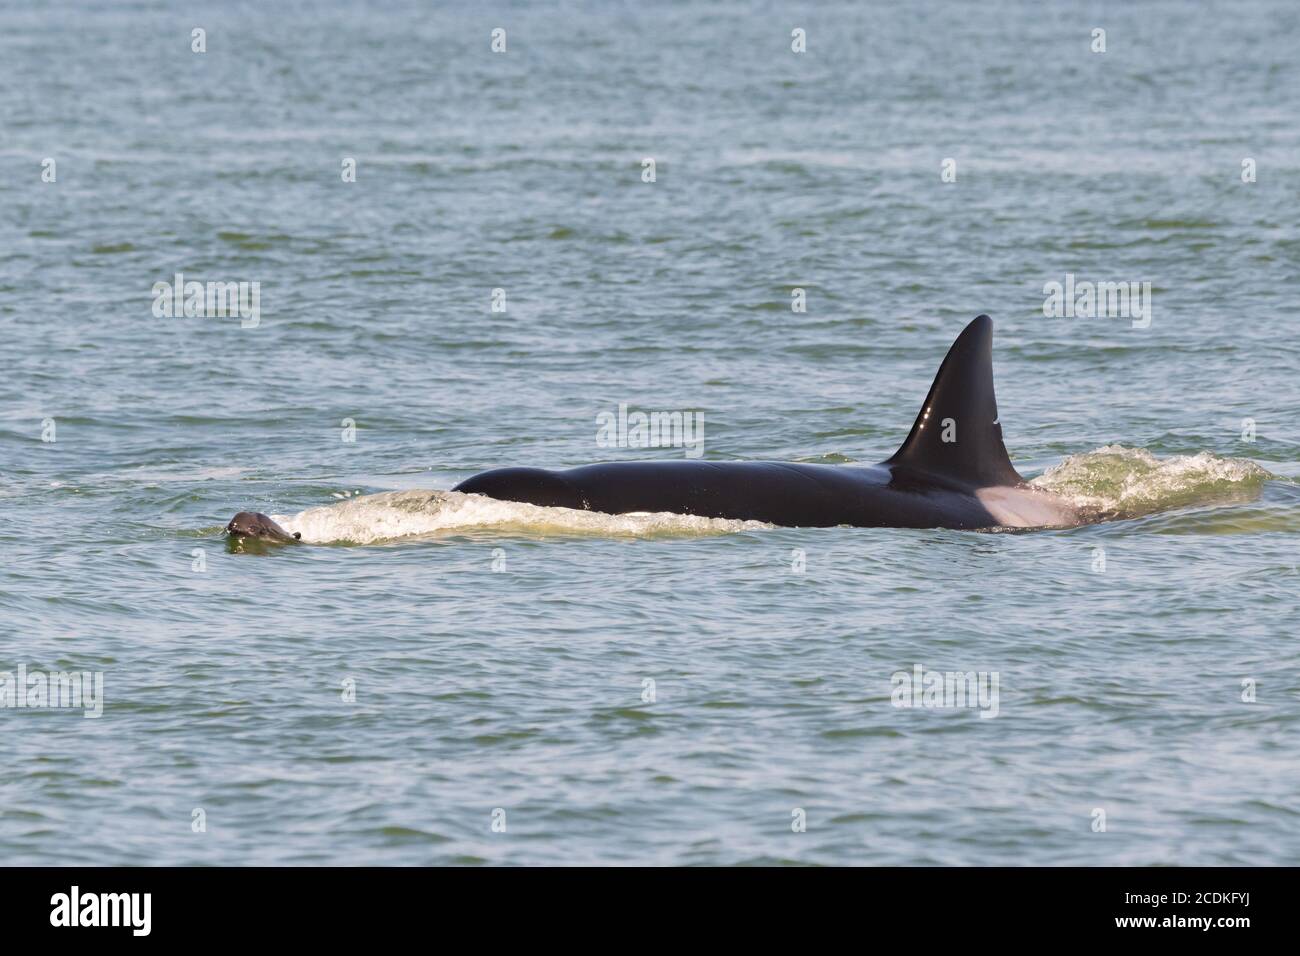 Ein transienter Orca der T36A-Schote (möglicherweise T36A1 aka Tierna), der vor der Küste von Point Roberts, Washington, eine junge Schweinswale verfolgt. Stockfoto